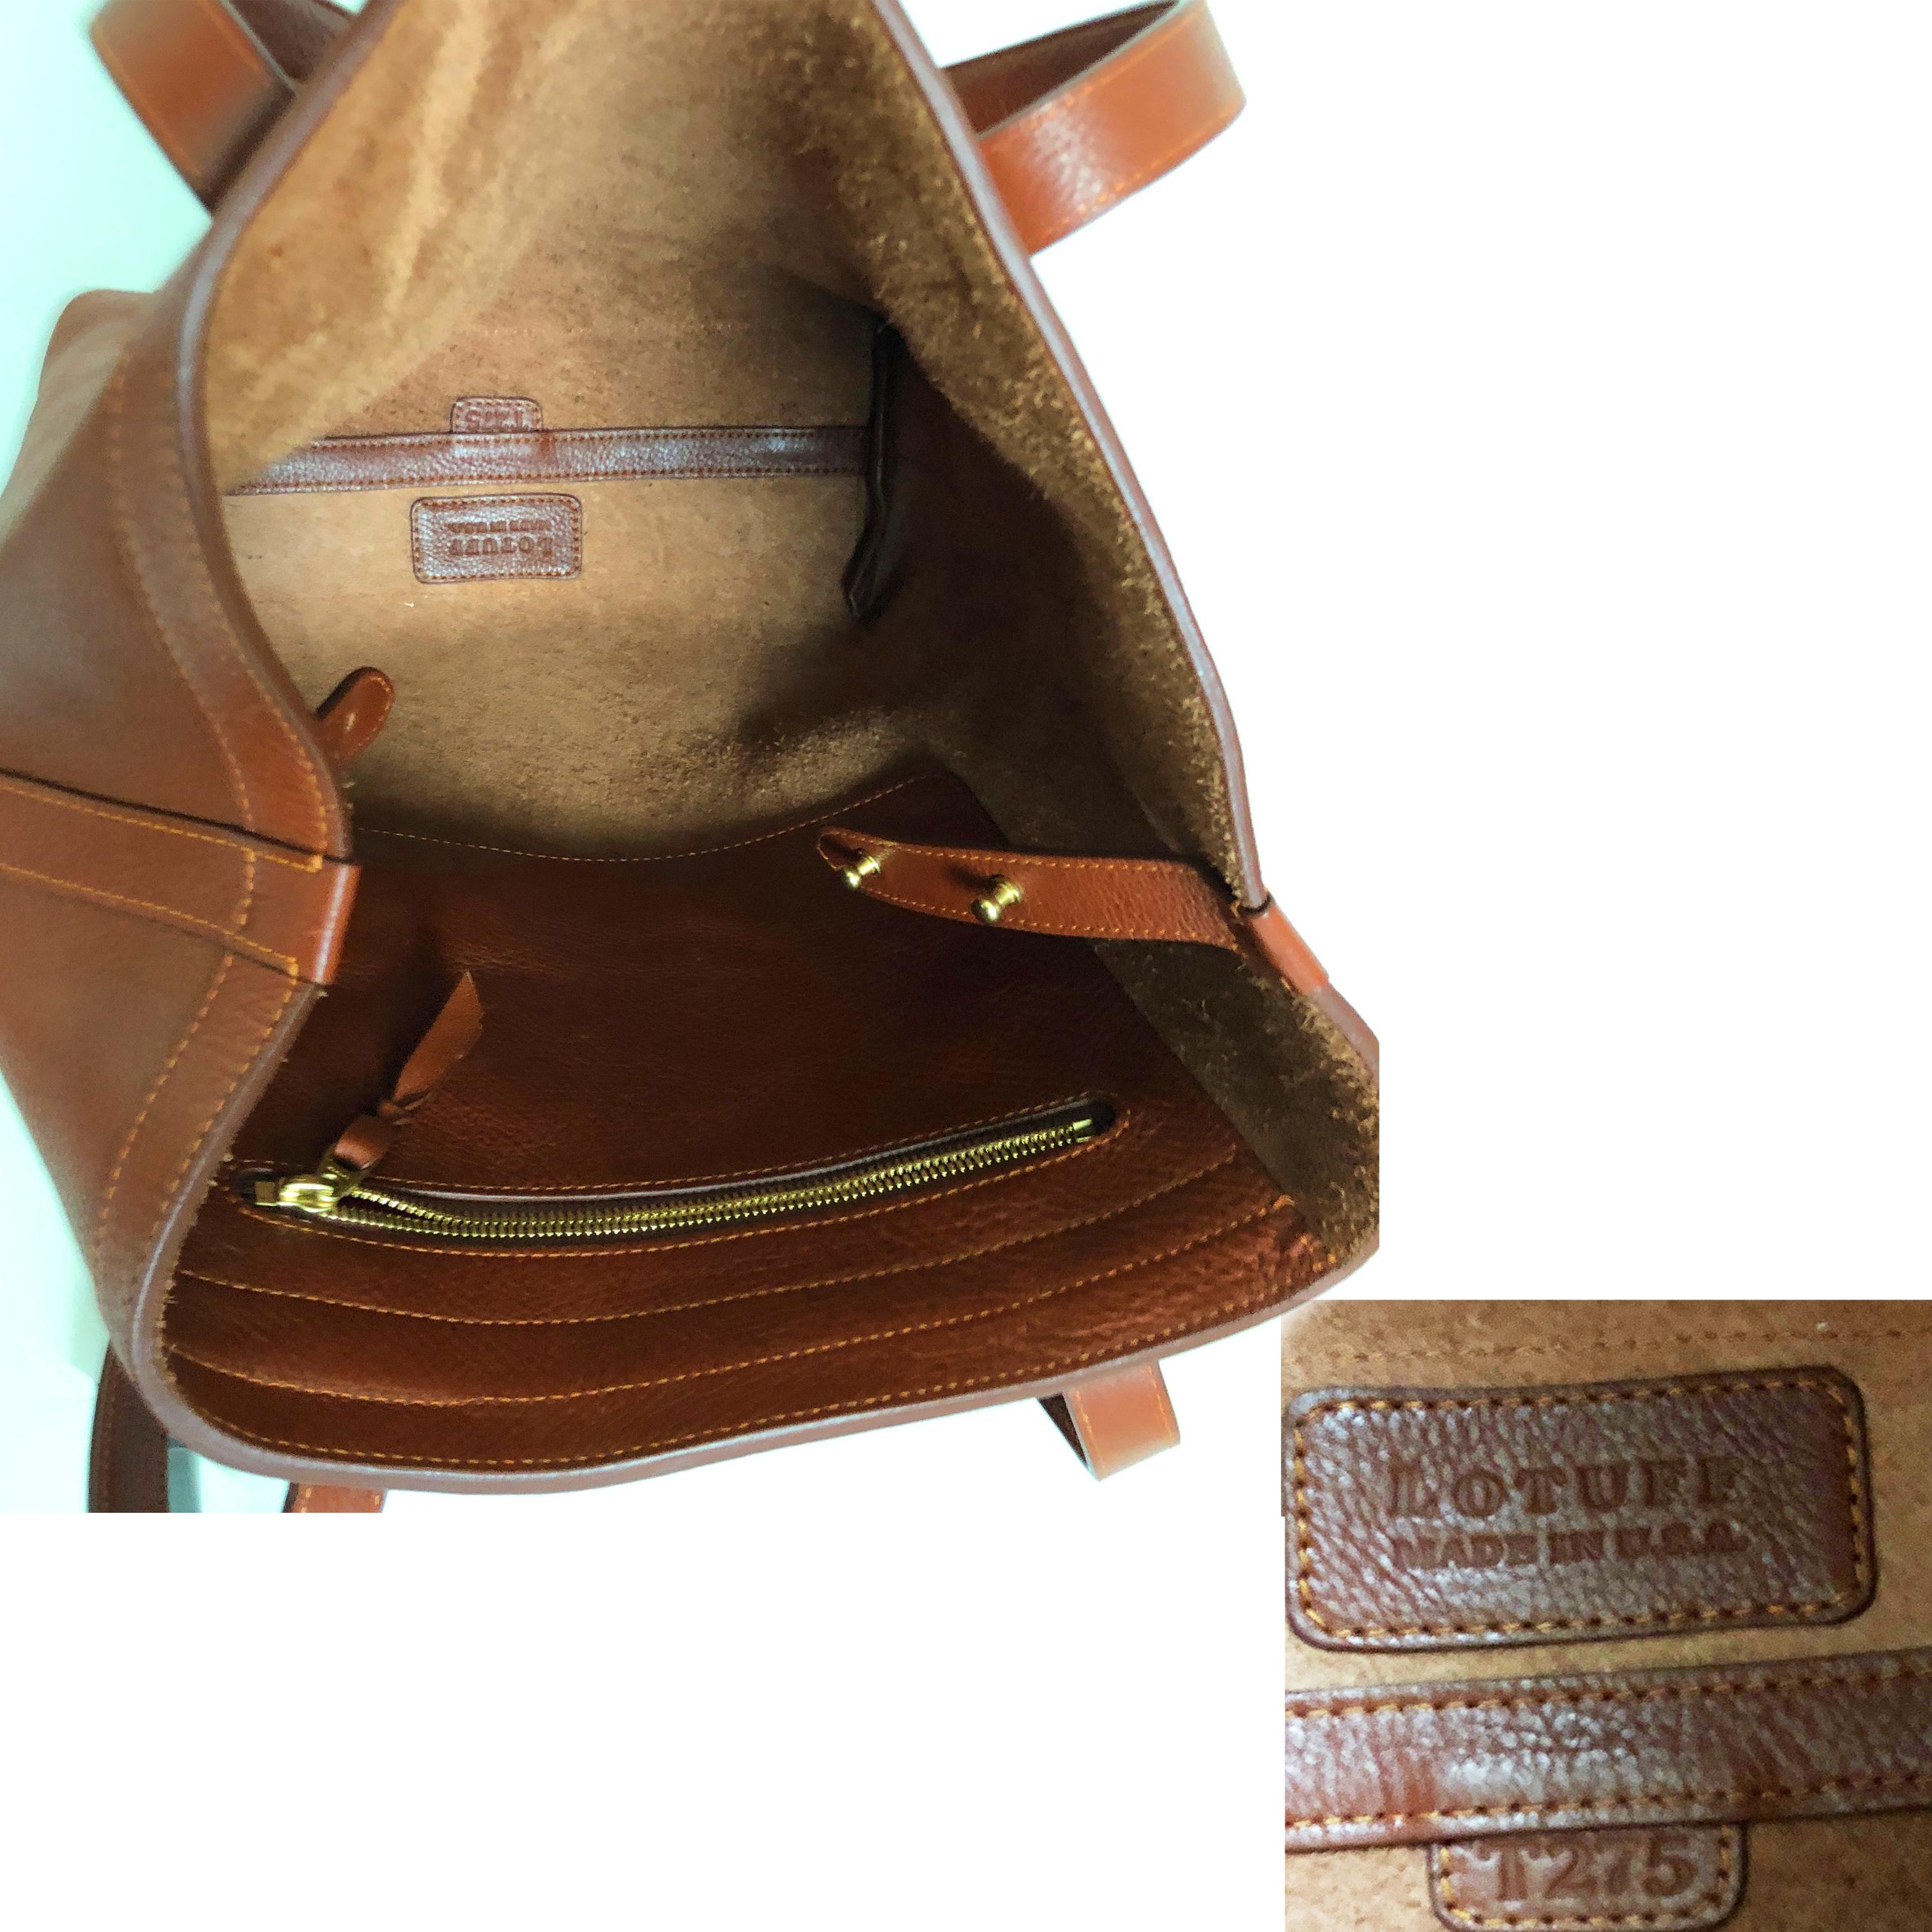 Lotuff Leather Angle Tote Bag Saddle Tan XL Travel Bag  2